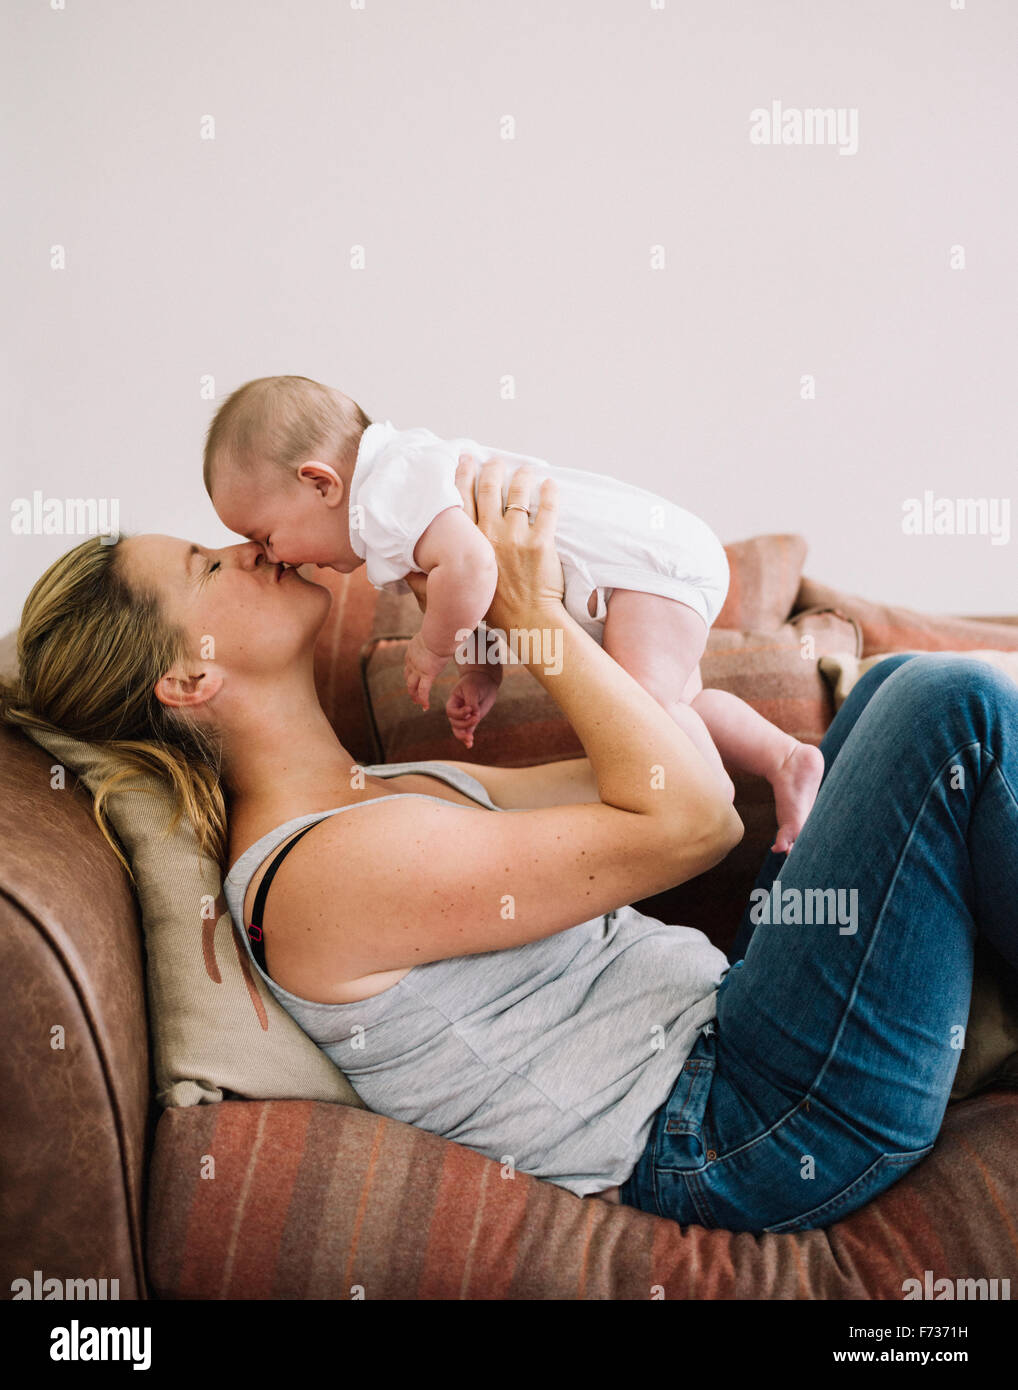 Una donna sdraiata su un divano a giocare con una bambina, bacio sulla guancia. Foto Stock